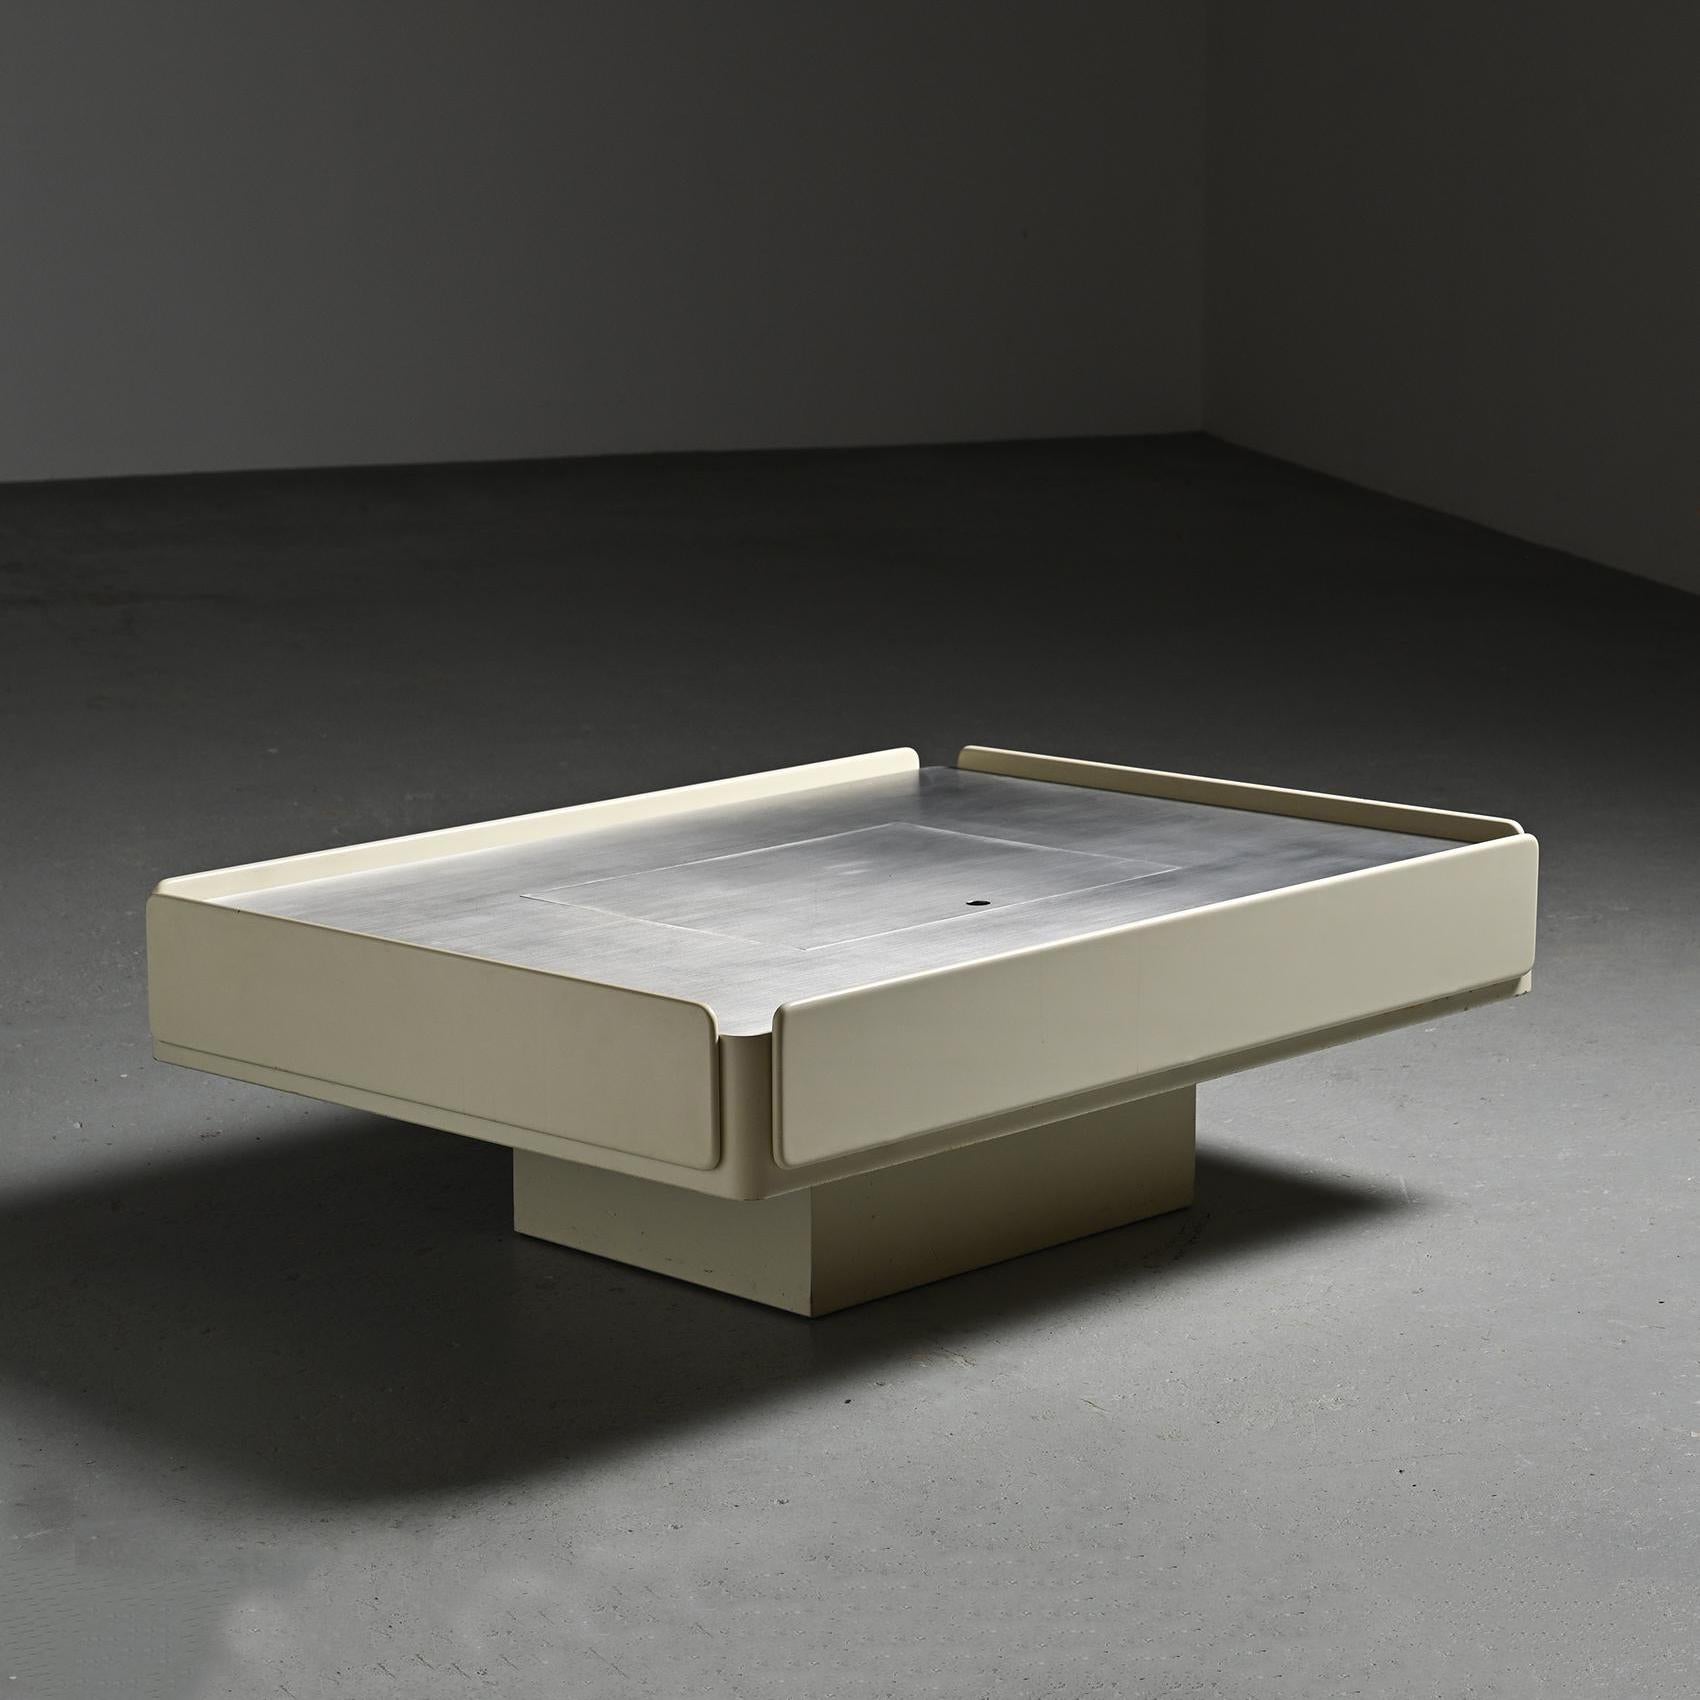 
Une table basse connue sous le nom de modèle Caori, imaginée par le designer italien Vico Magistretti dans les années 1960.

La structure, fabriquée en bois laqué blanc, abrite avec élégance un spacieux plateau rectangulaire en aluminium. Ce